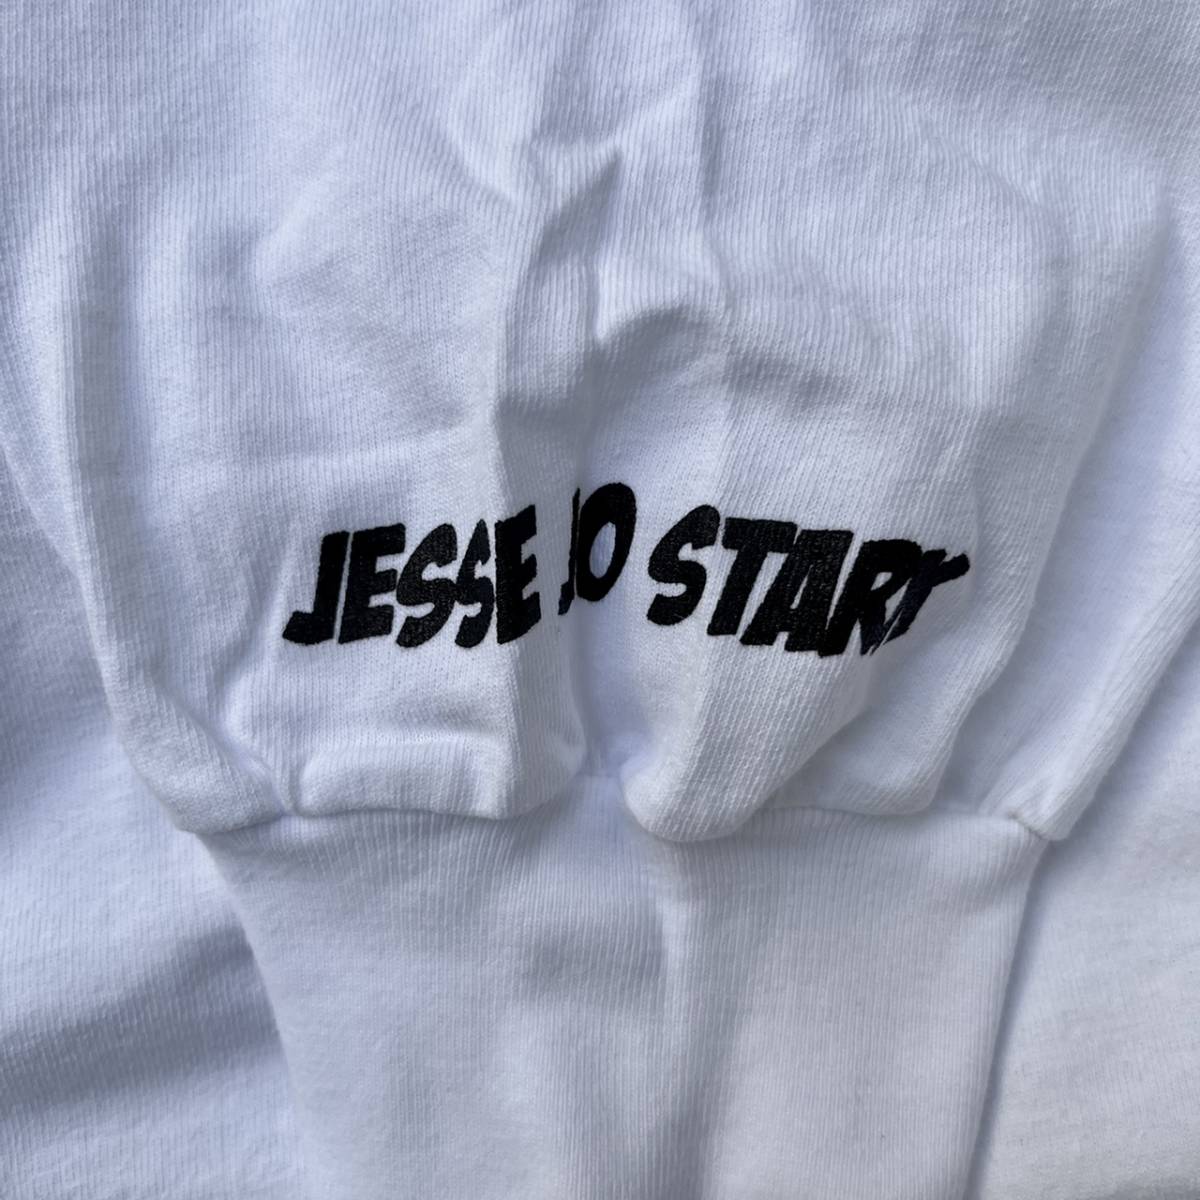 新品 新品 JESSE JO STARK ジェシージョースターク XXLサイズ DEADLY DOLL ロングスリーブTシャツ プリント ホワイト クロムハーツ